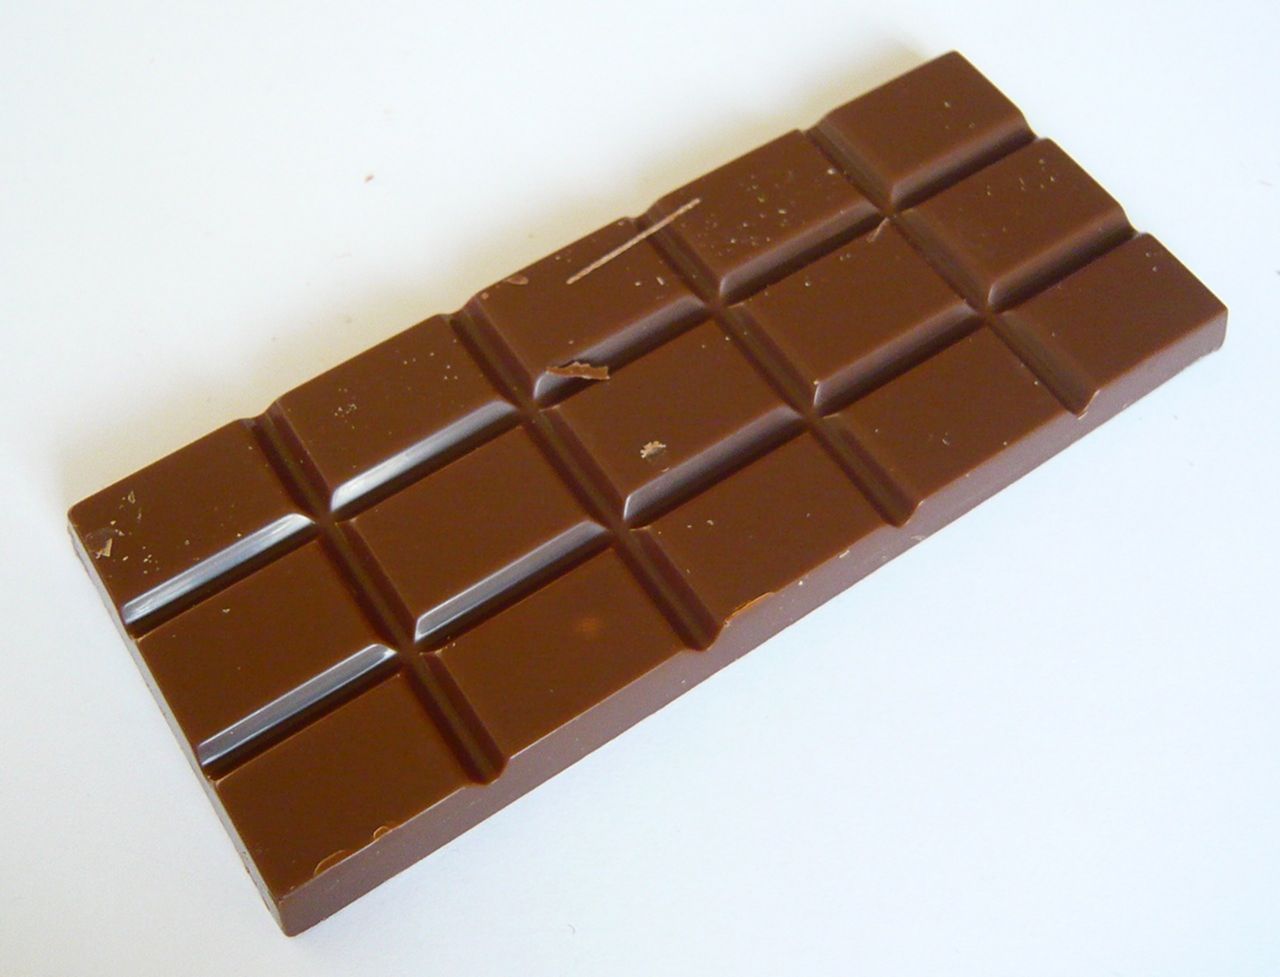 Купить шоколад иваново. Плитка шоколада. Шоколадная плитка. Шоколадка плитка. Плиточный шоколад.